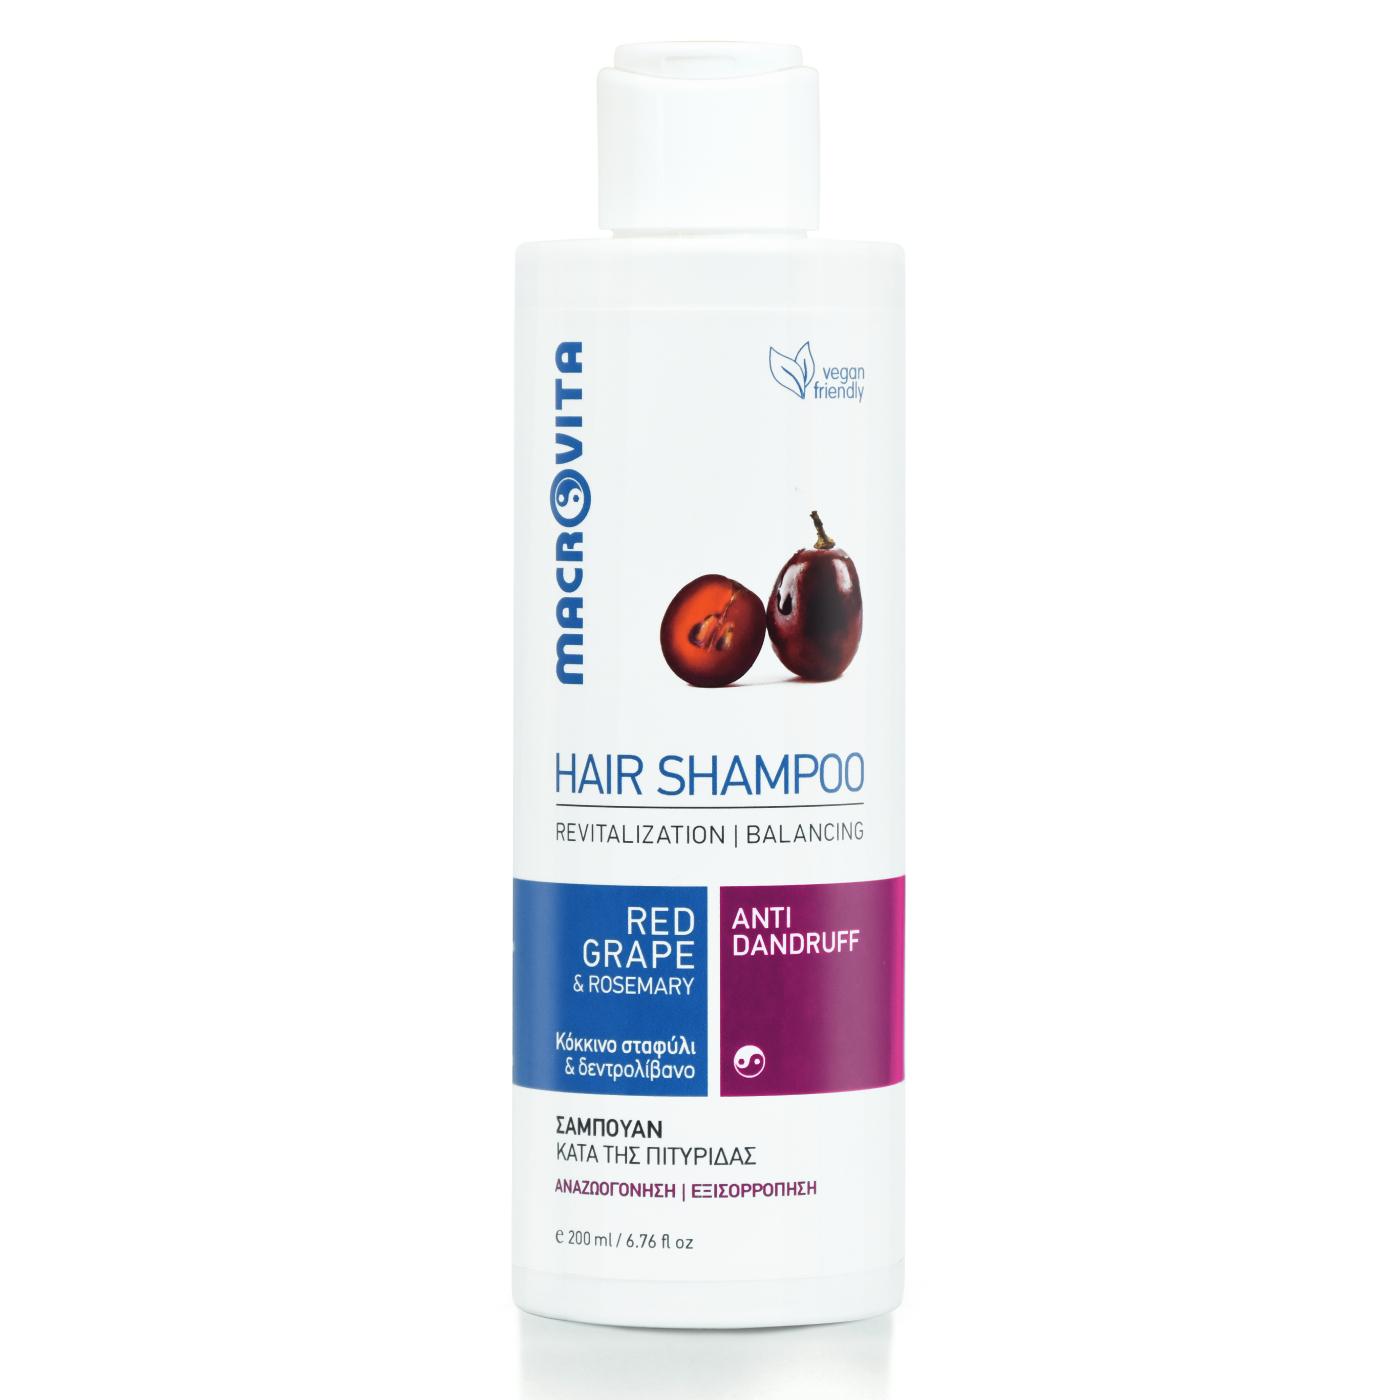 MACROVITA Prirodni šampon protiv peruti – Red Grape 200ml